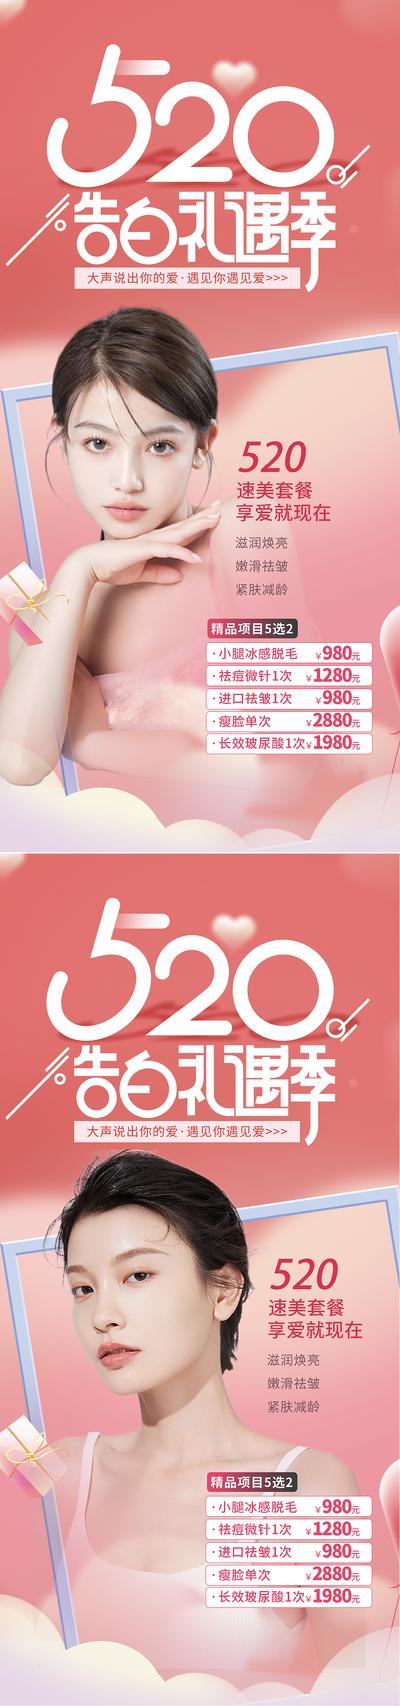 南门网 520促销活动海报